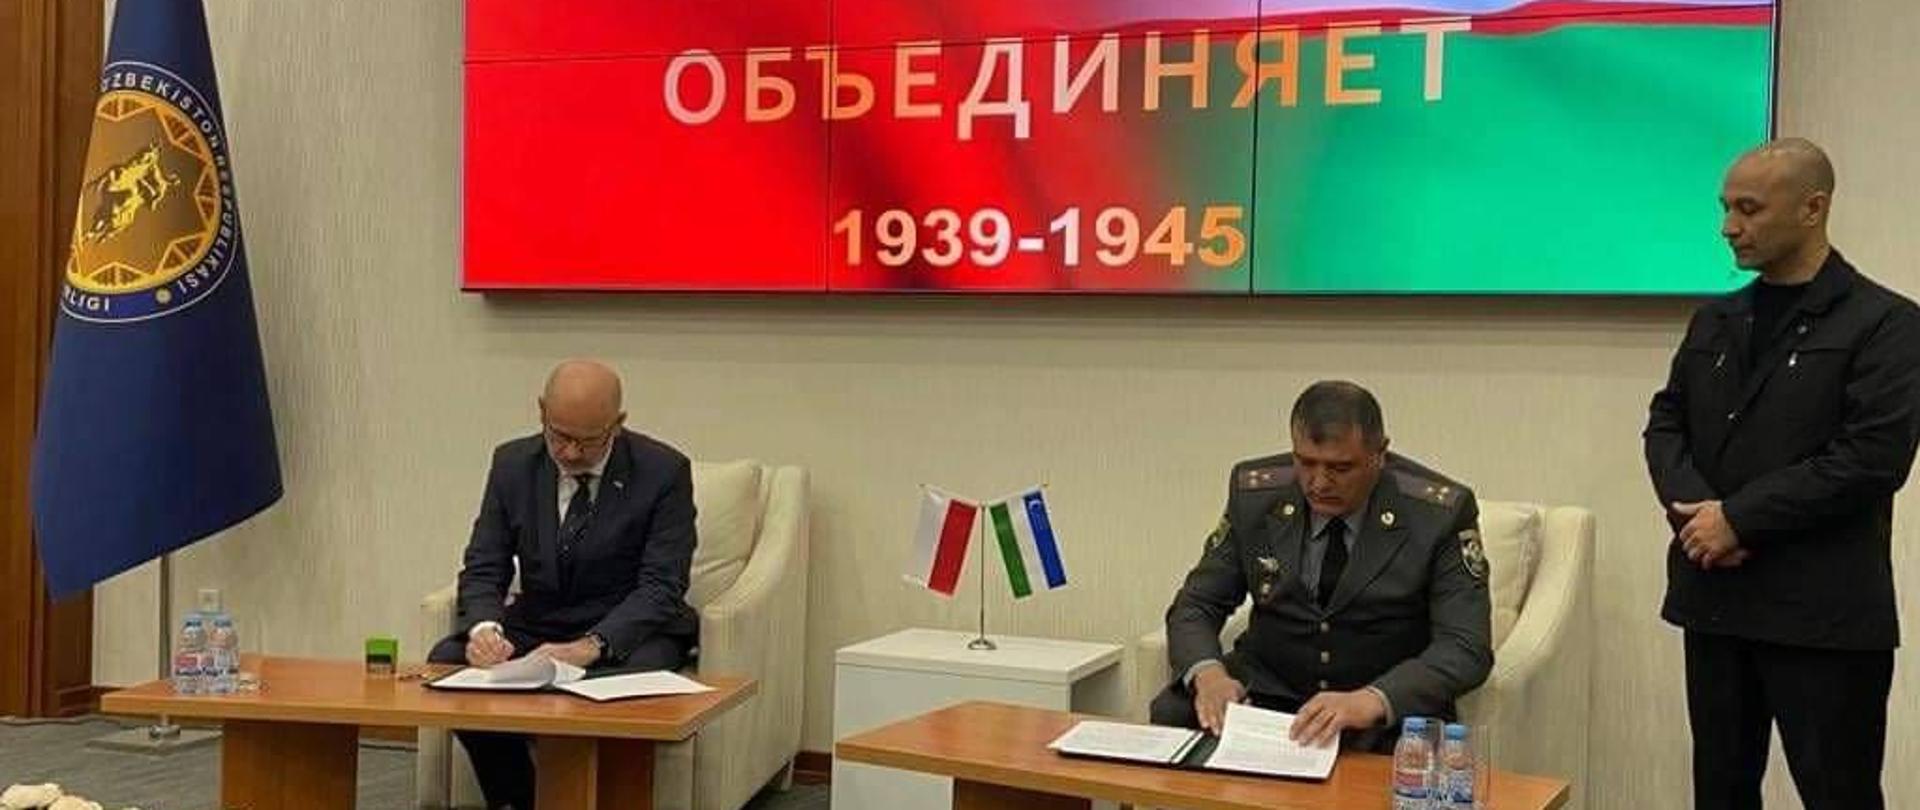 Podpisanie umowy o współpracy między MII wojny światowej w Gdańskeij a muzeum Szon-Szaraf w Taszkencie